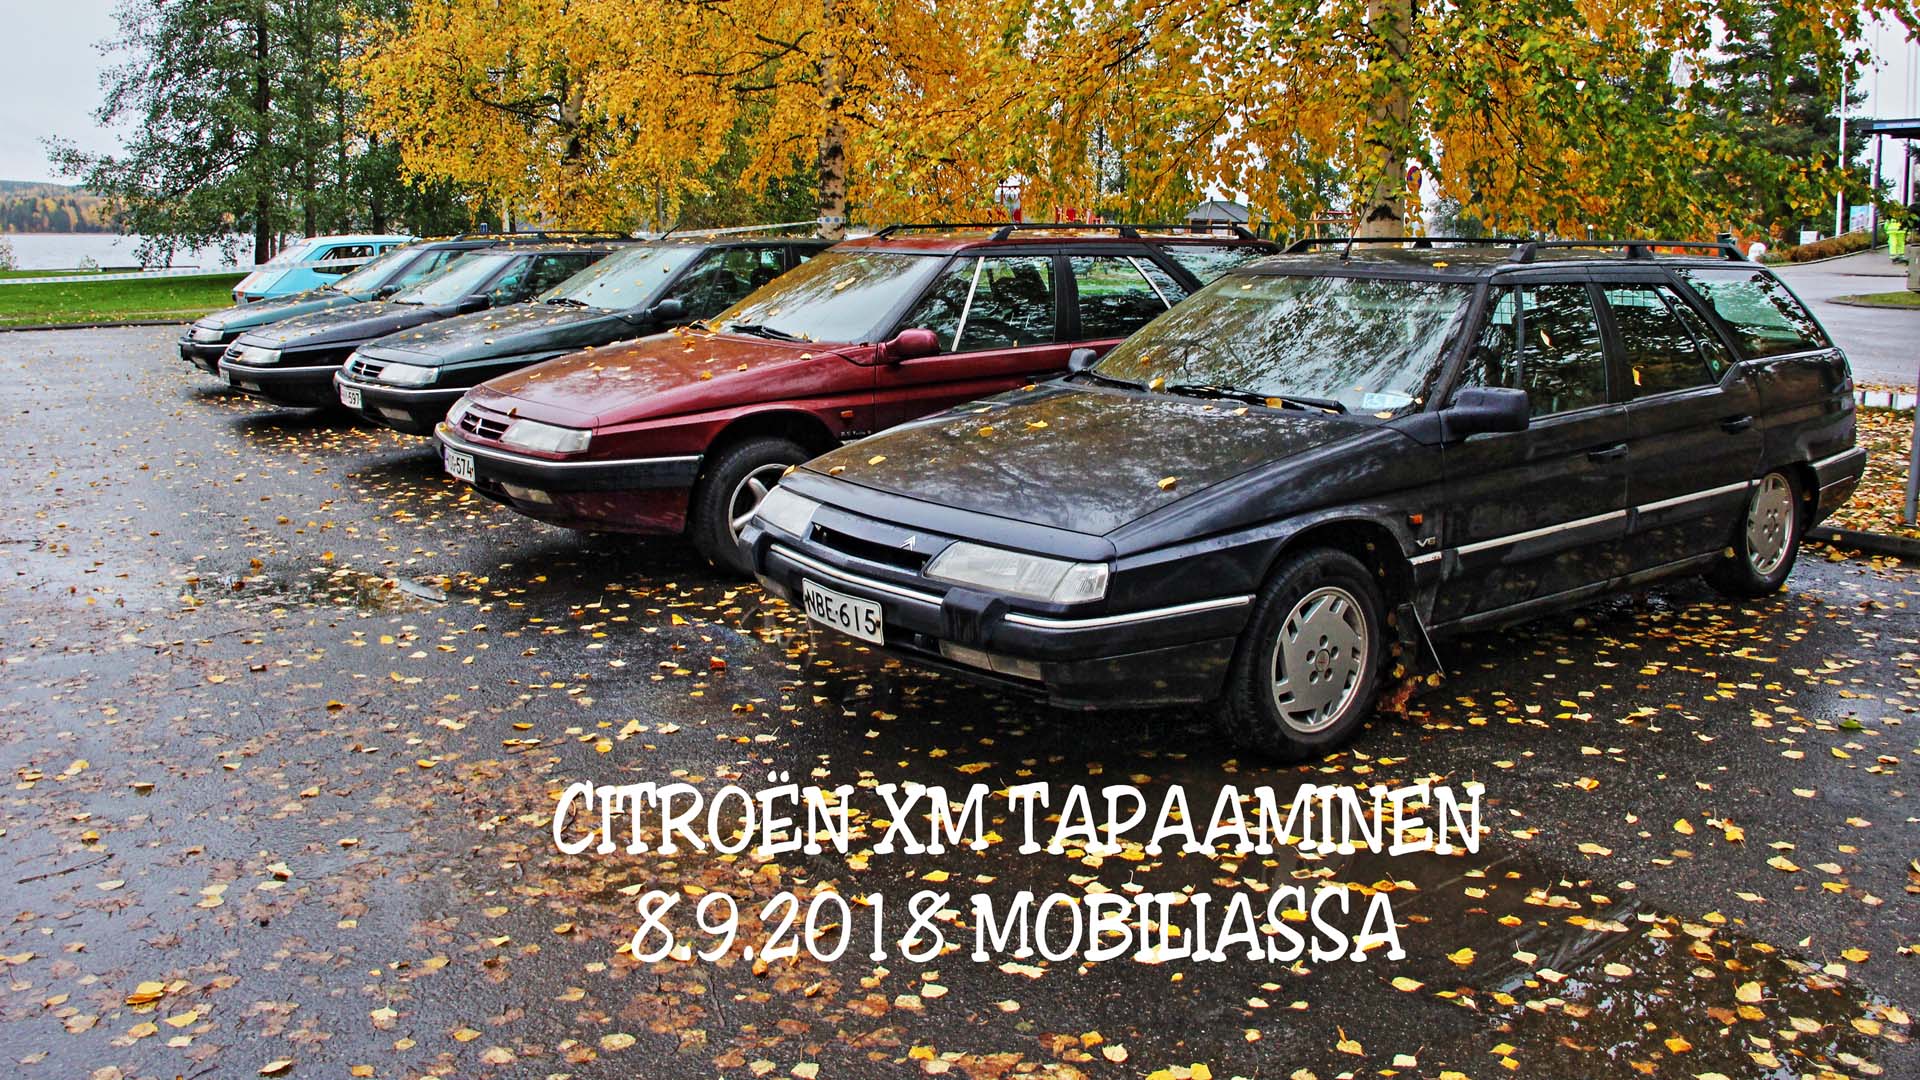 Citroën XM autoja syksyisellä parkkipaikalla.